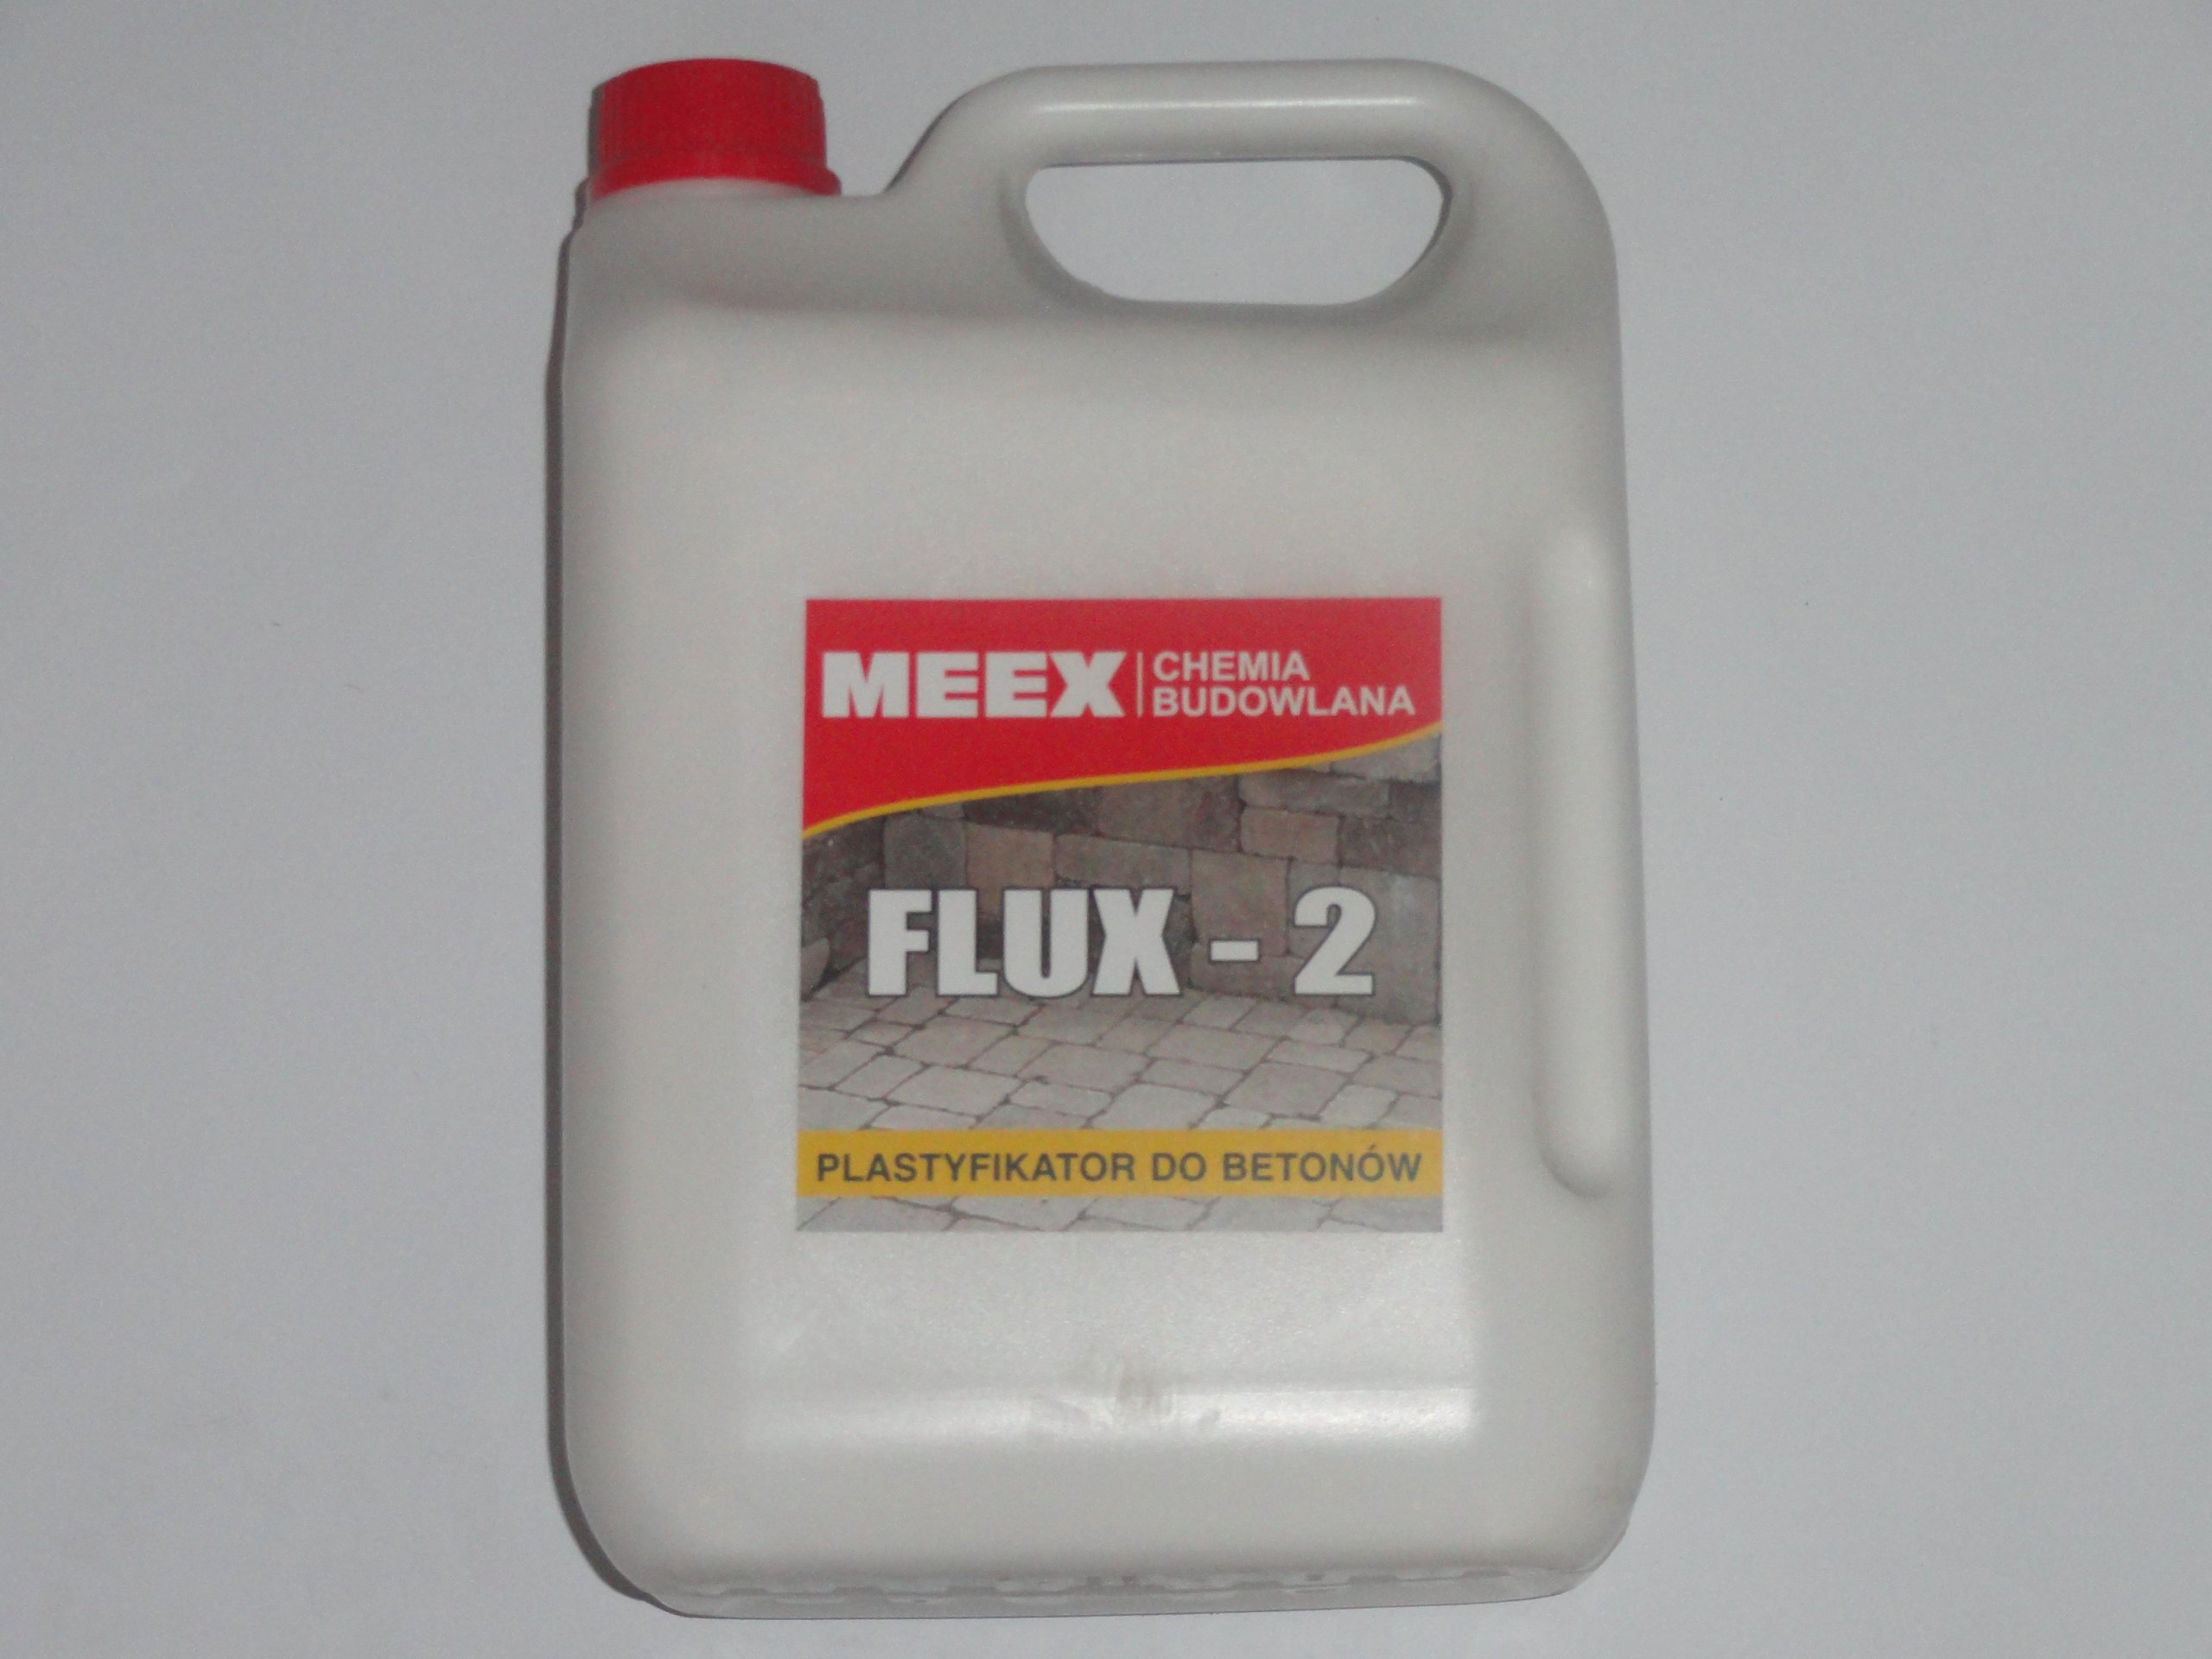  FLUX-2 Пластификатор для бетонной брусчатки 10л: отзывы, фото и .